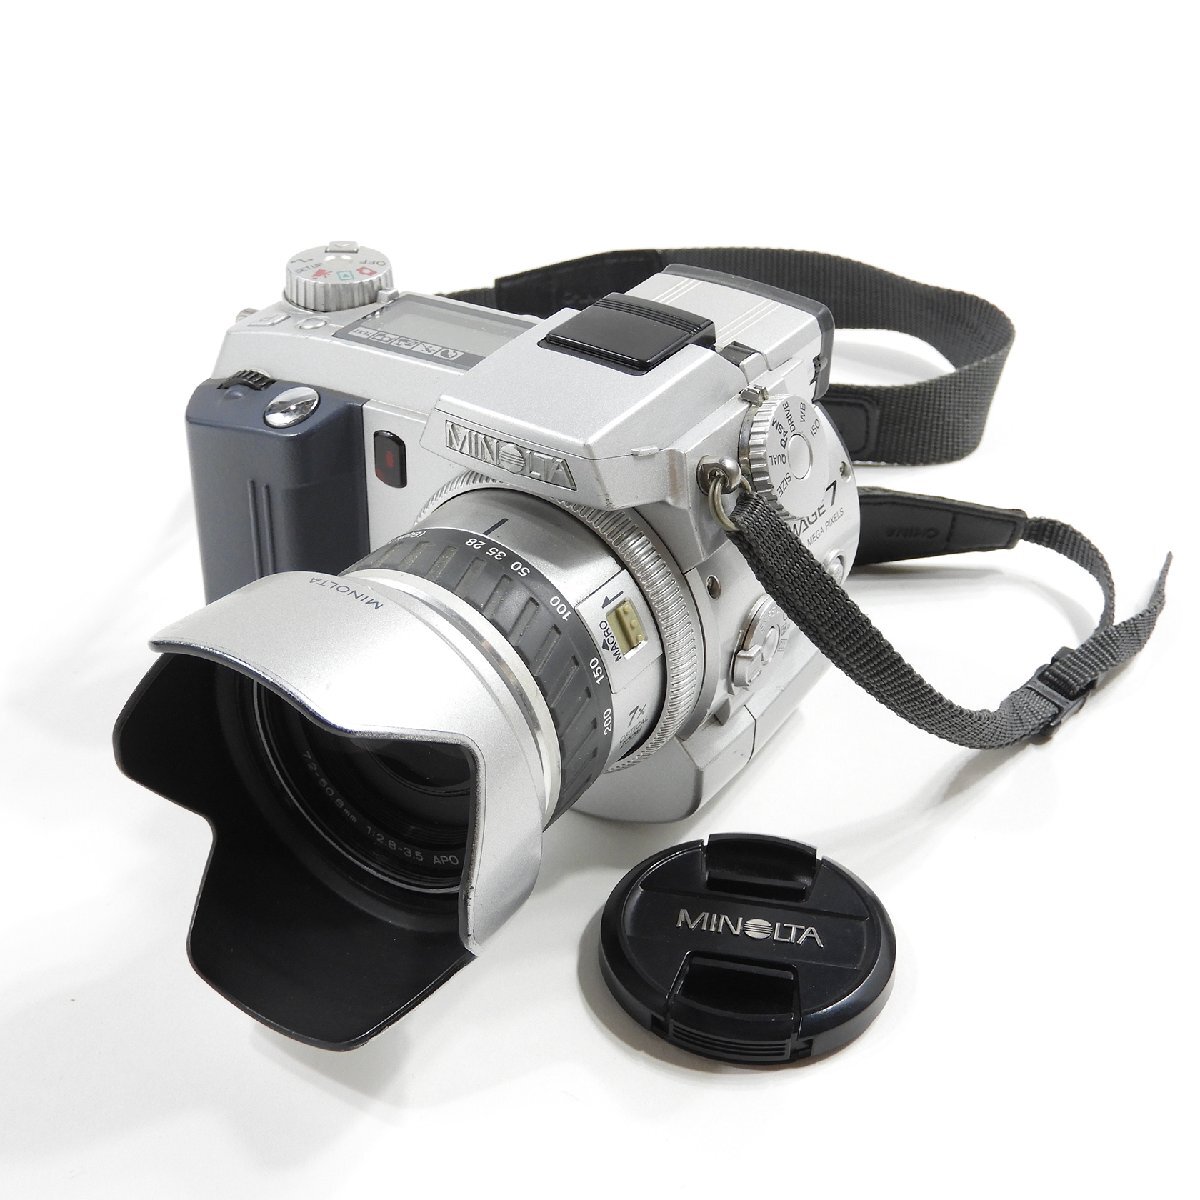 Minolta ミノルタ Dimage 7 デジタルカメラ ジャンク #17545 カメラ 趣味 コレクション デジカメの画像1